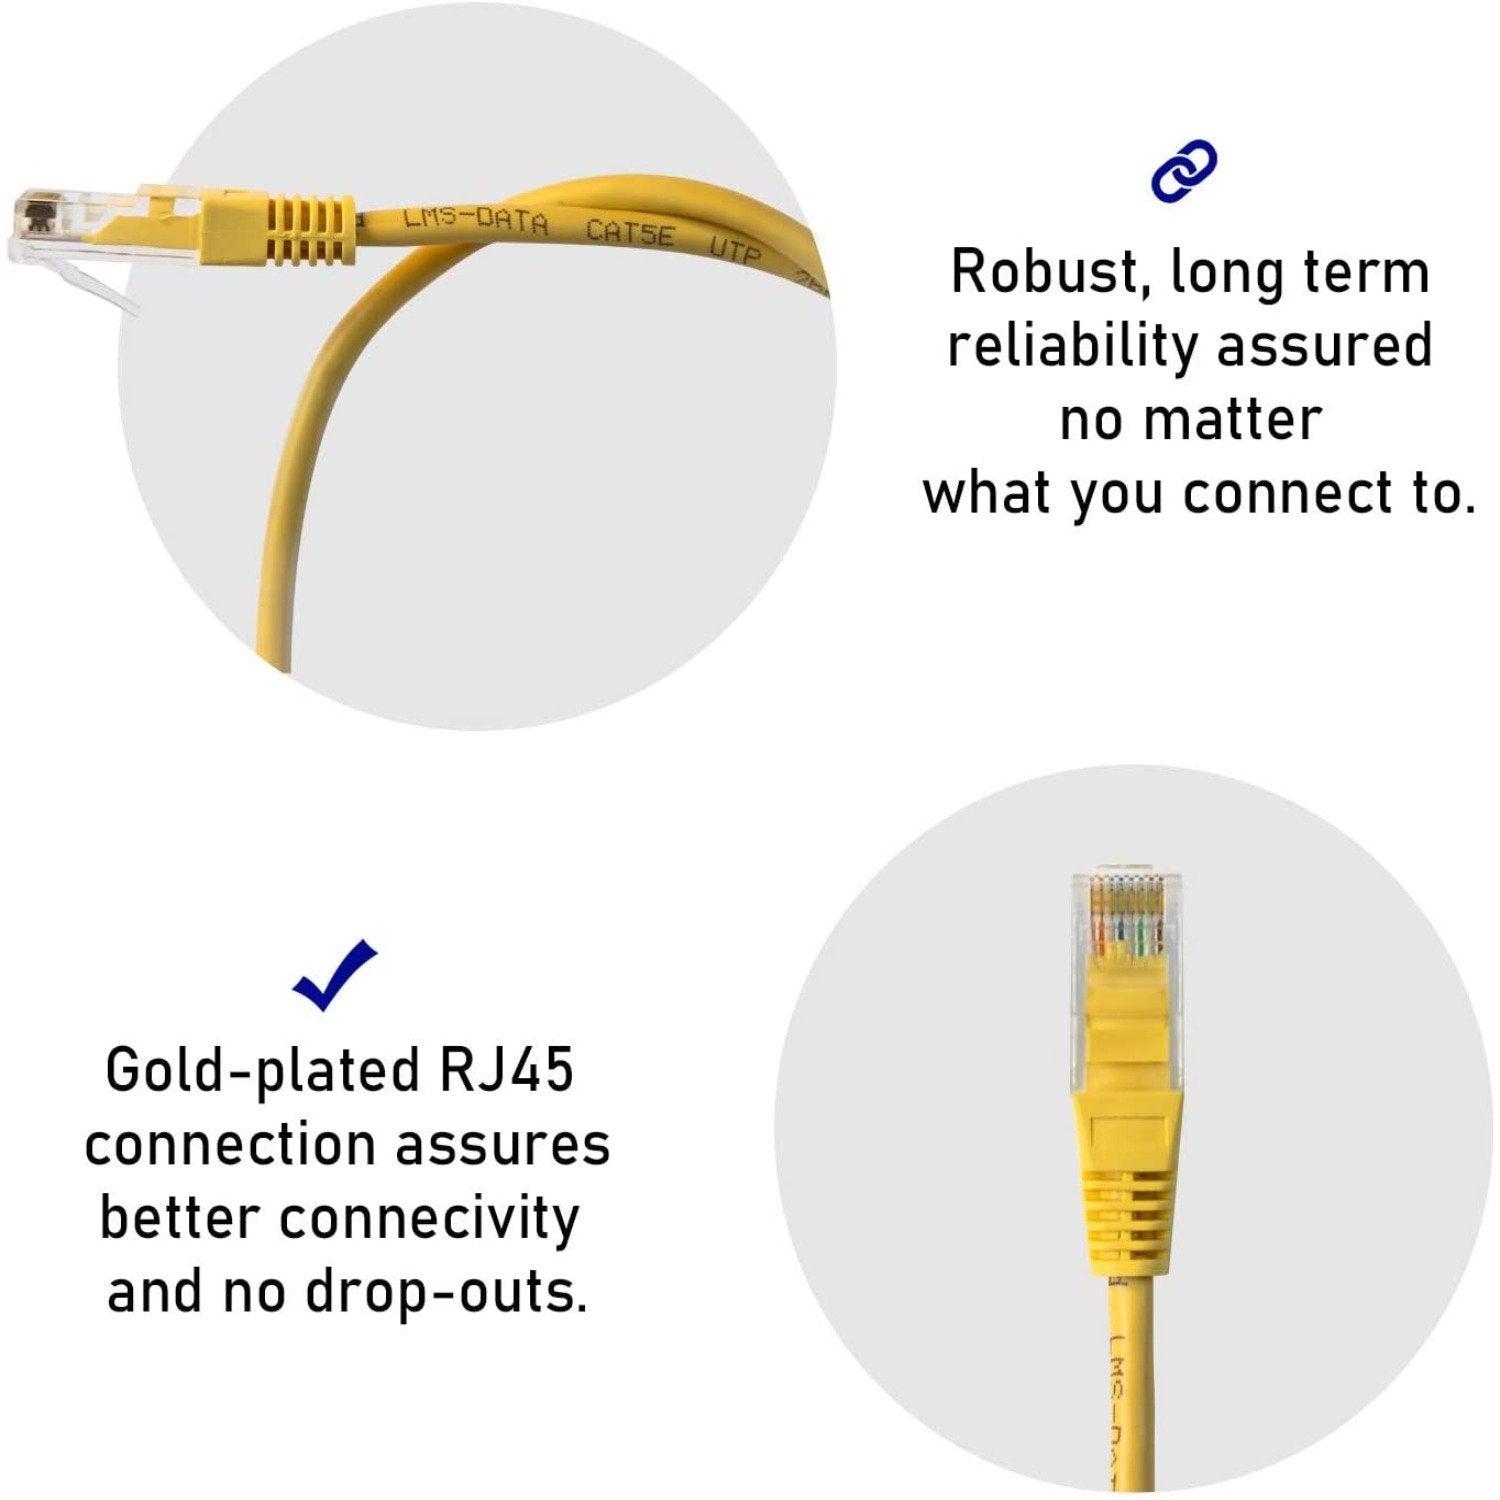 15m LMS Data Ethernet Cat5e RJ45 UTP Patch cable cord, LAN 10/100/1000Mbit/s Cable suitable